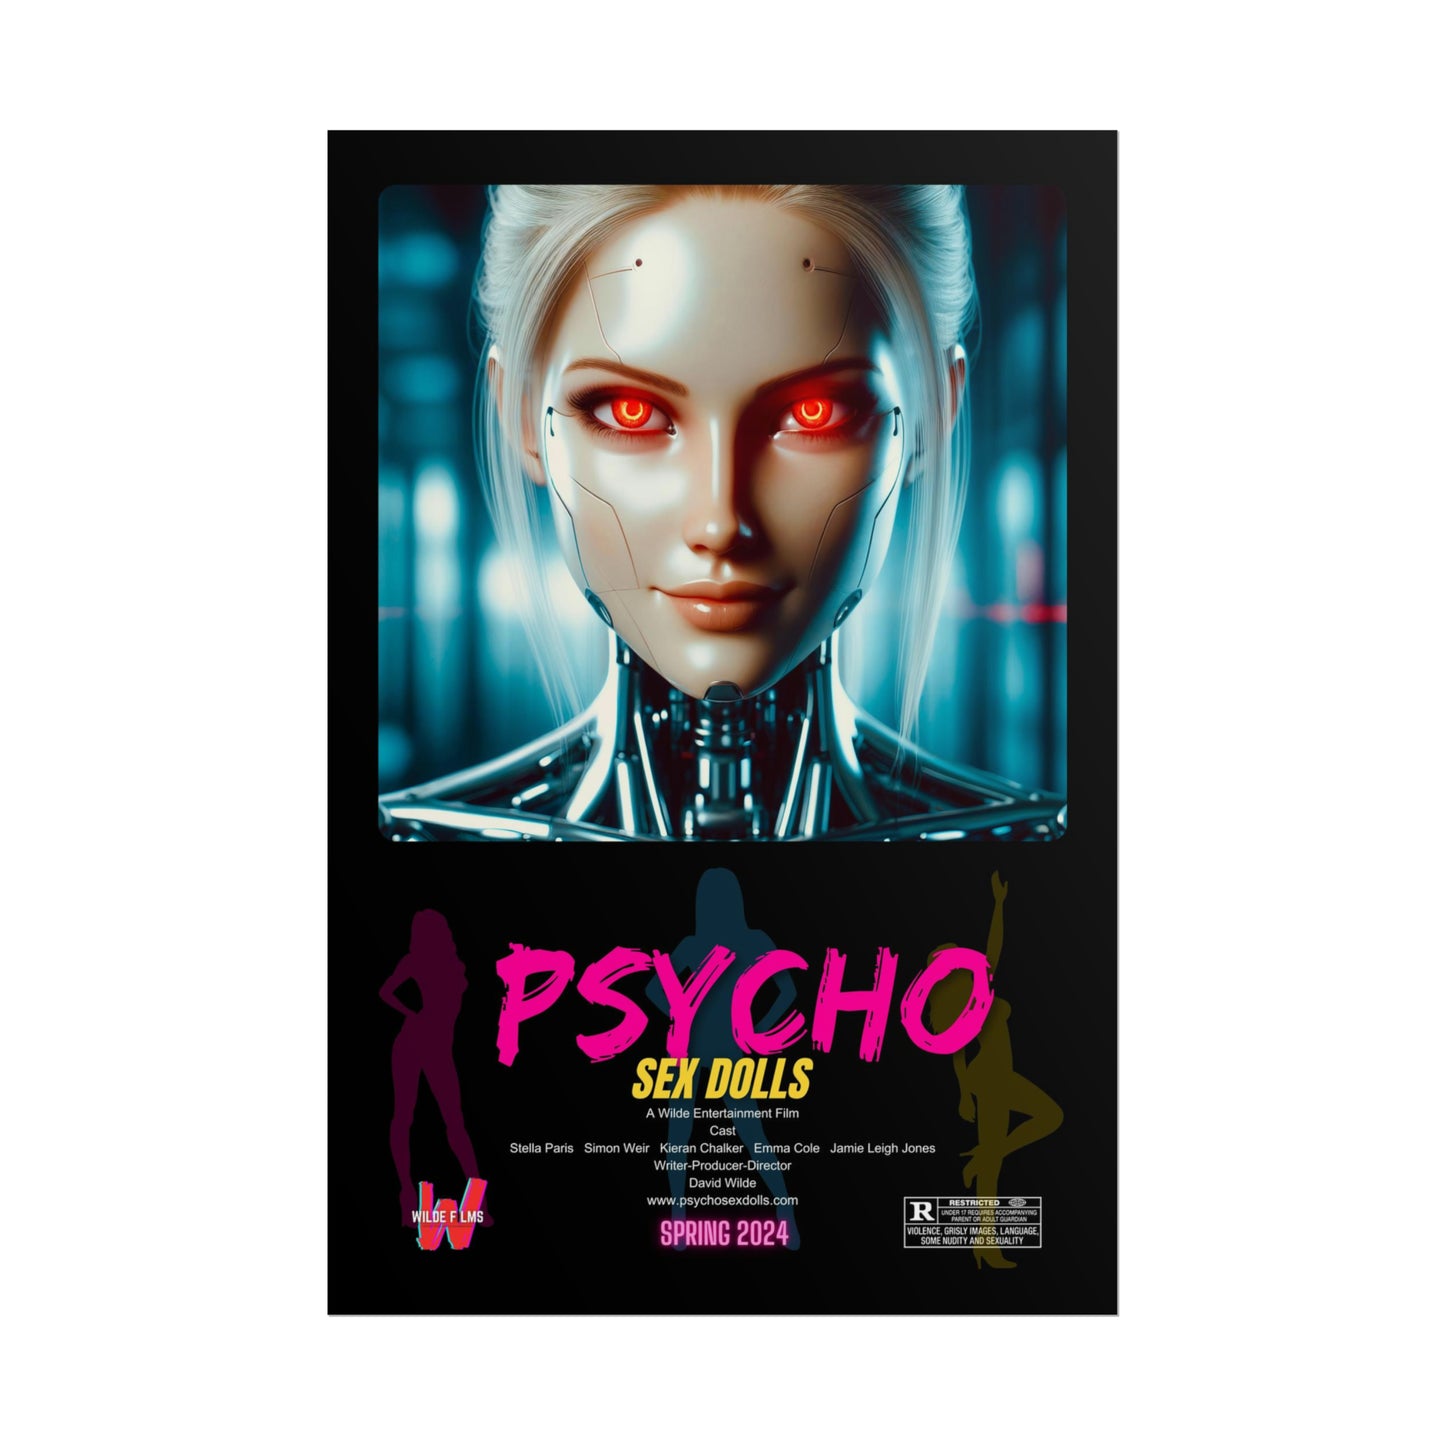 Psycho S*X Dolls movie poster